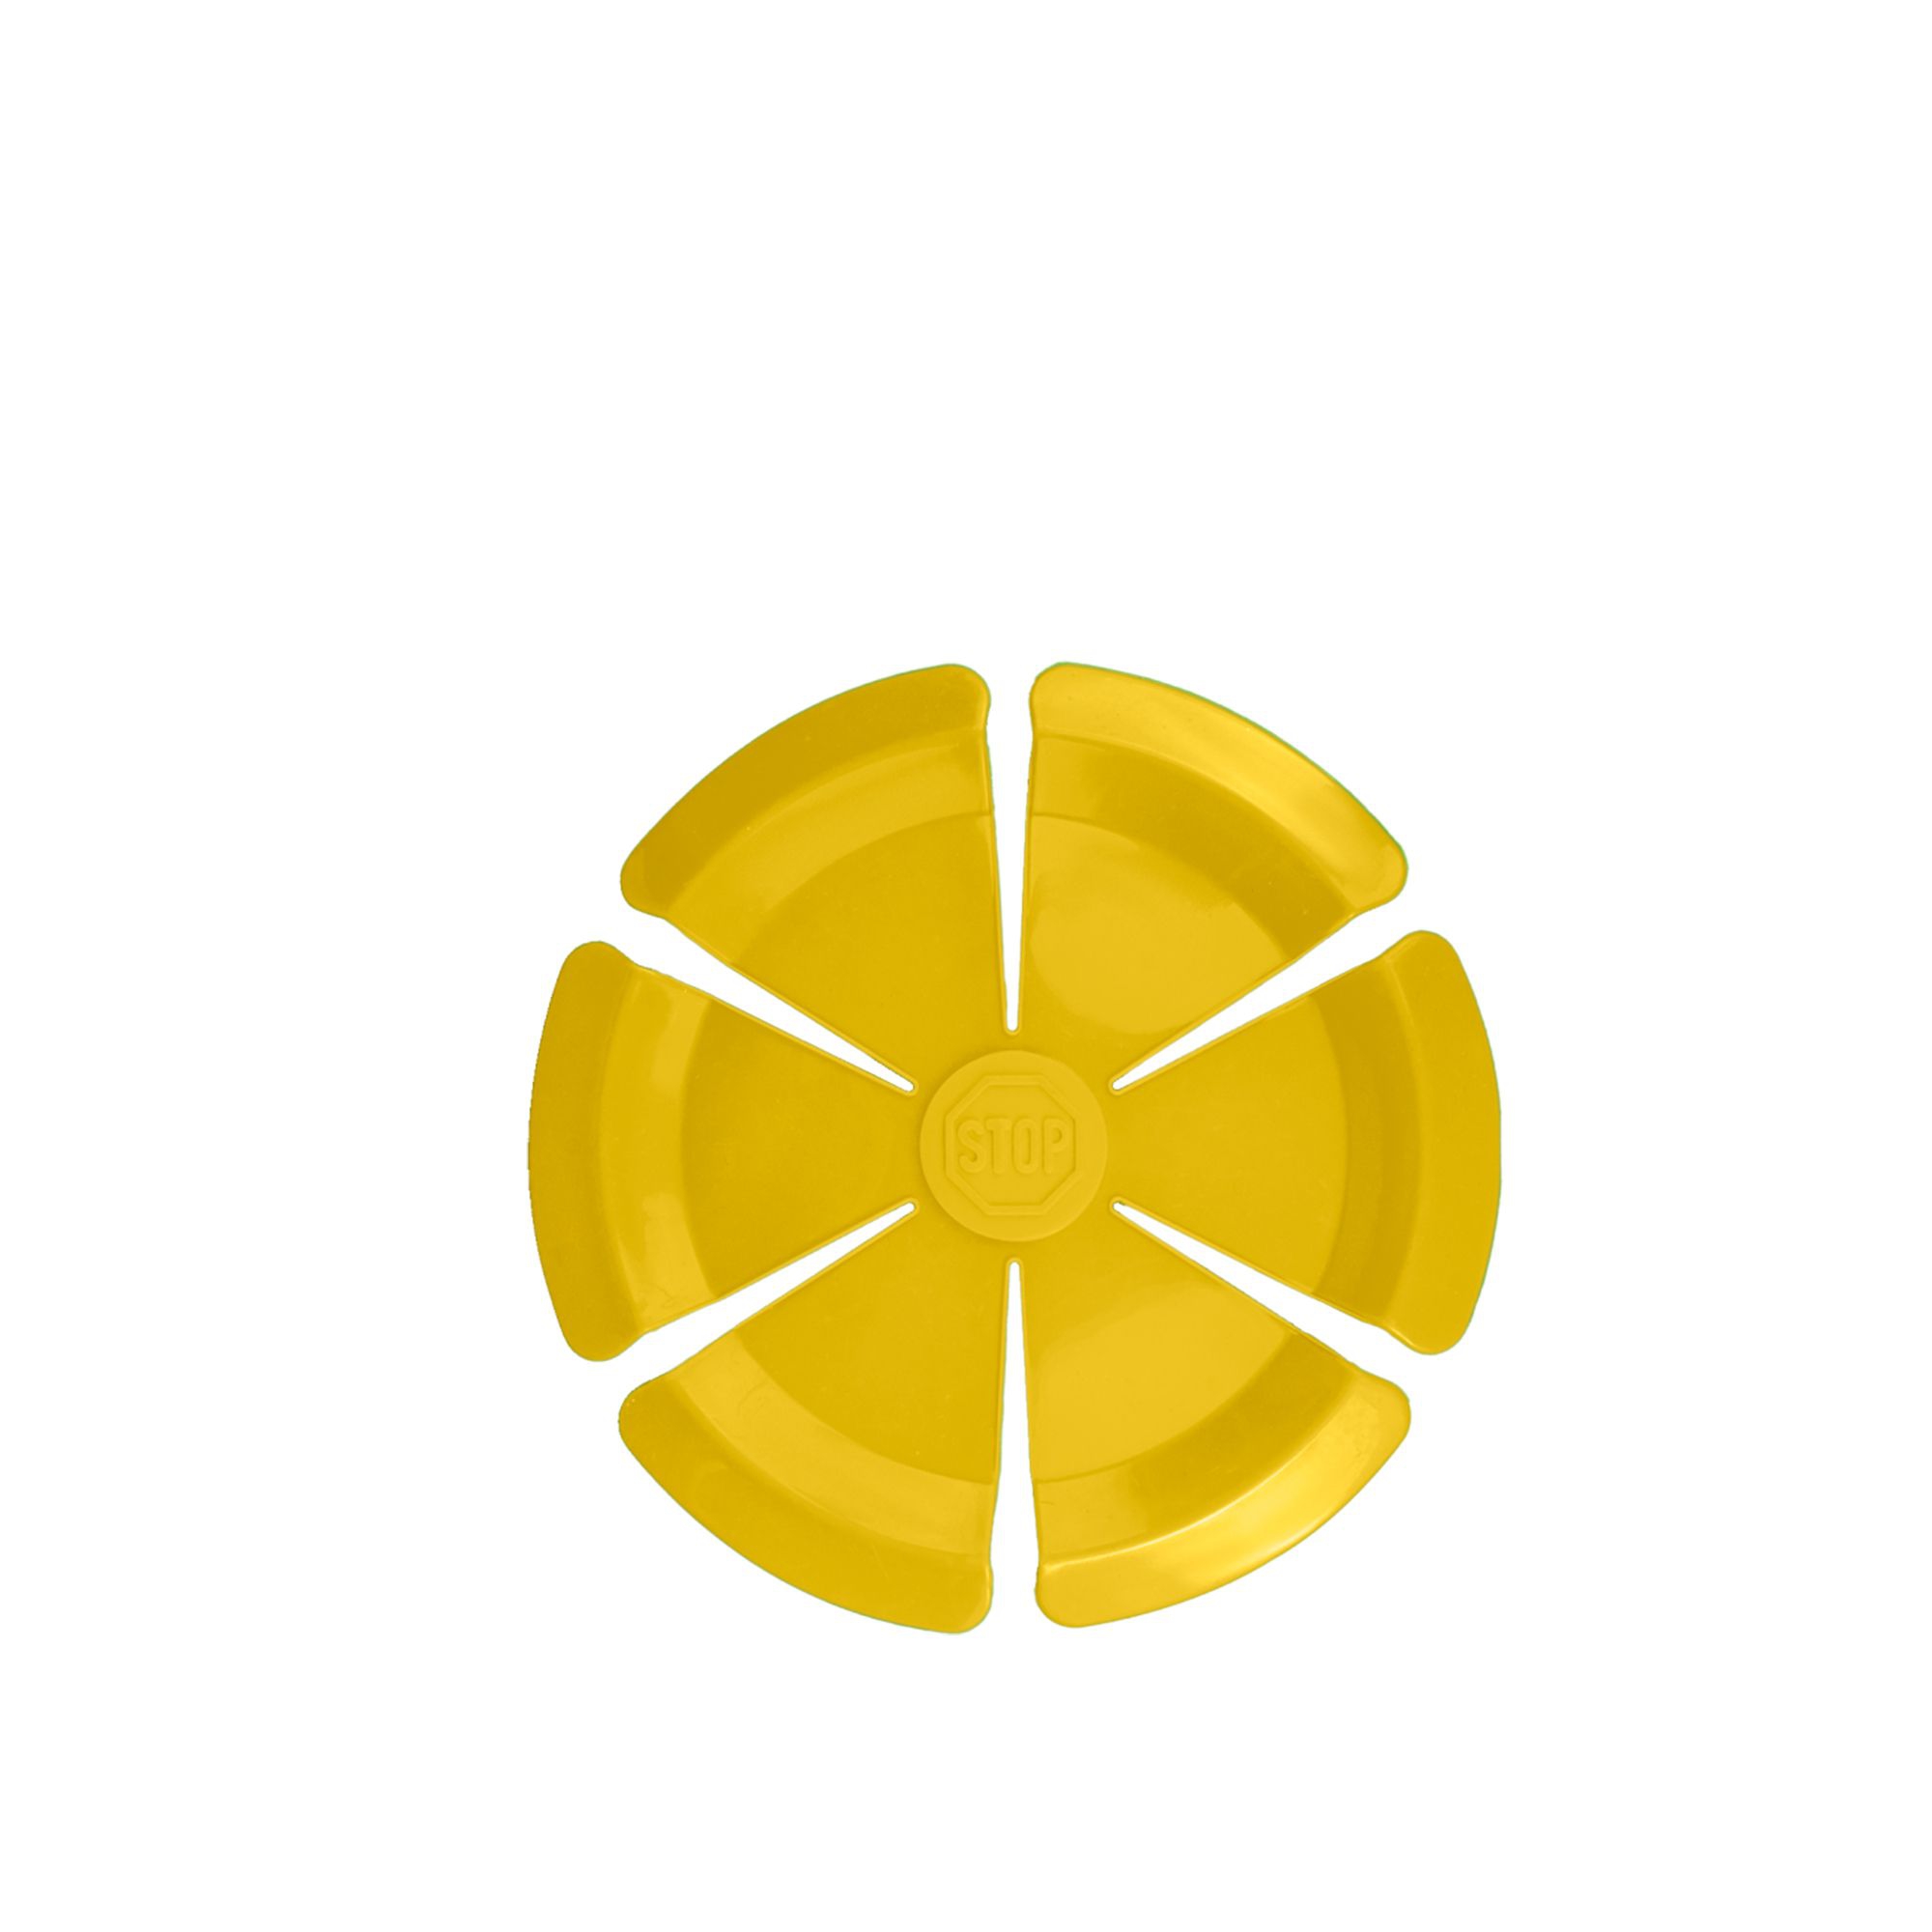 Kochblume - alternate blossom for Kochblume XL yellow